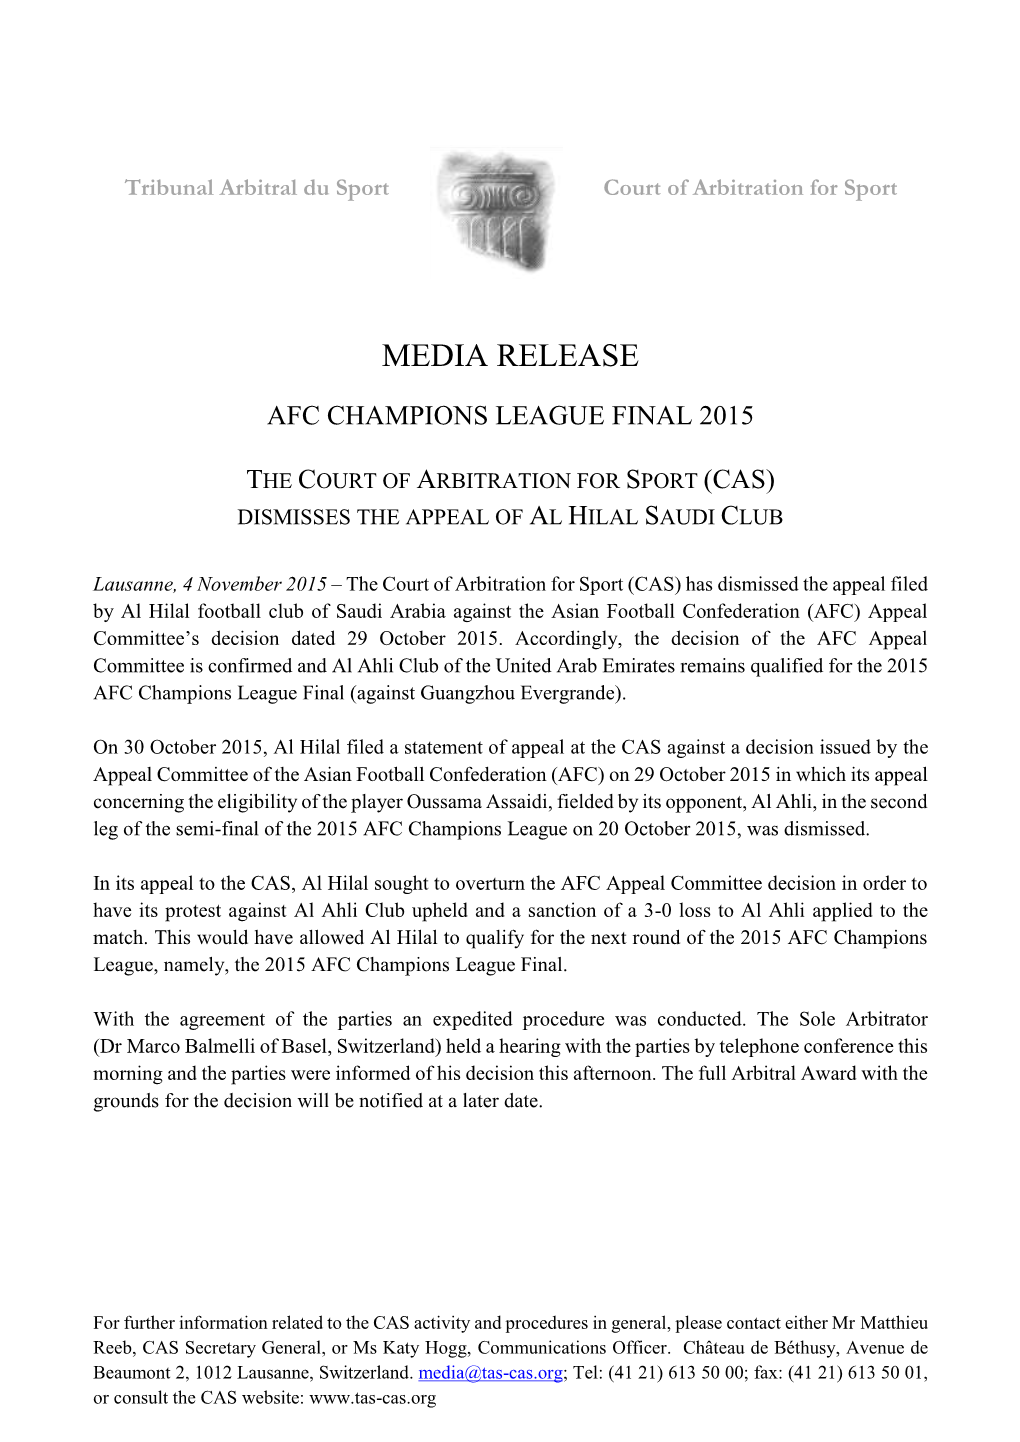 Afc Champions League Final 2015